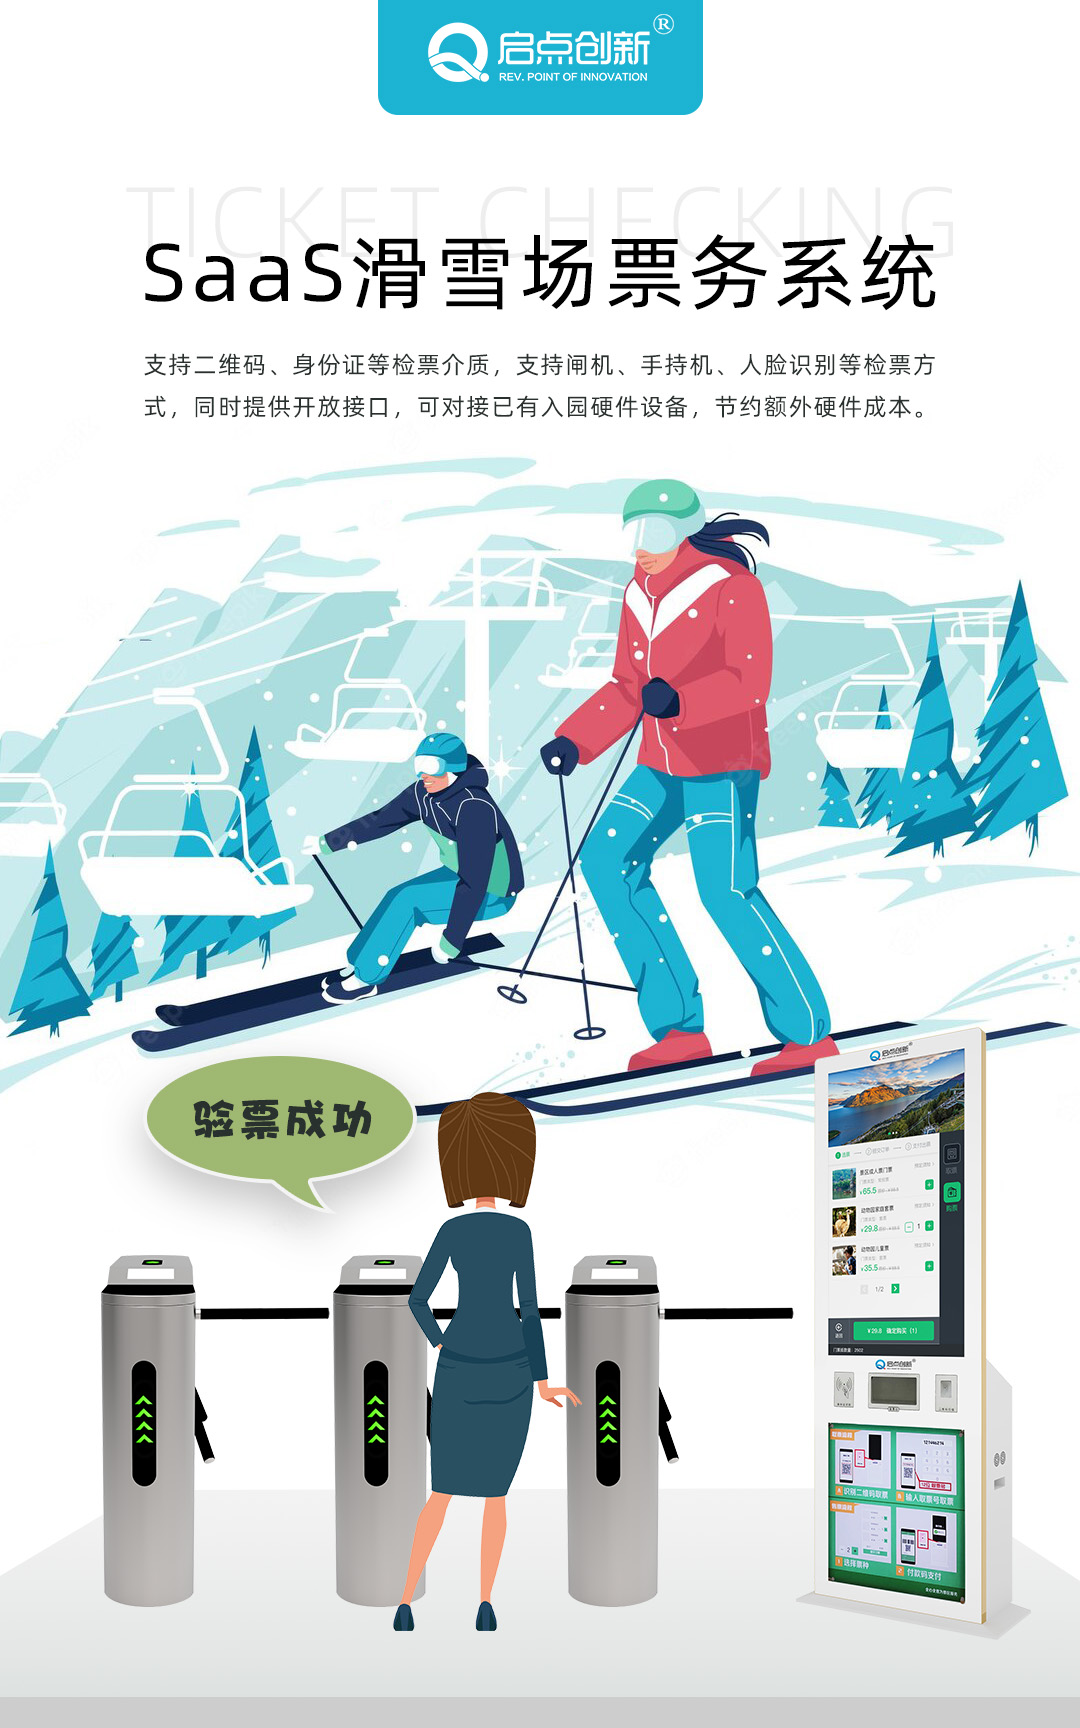 滑雪计时系统 SaaS滑雪比赛计时 SaaS滑雪系统 滑雪计时设备